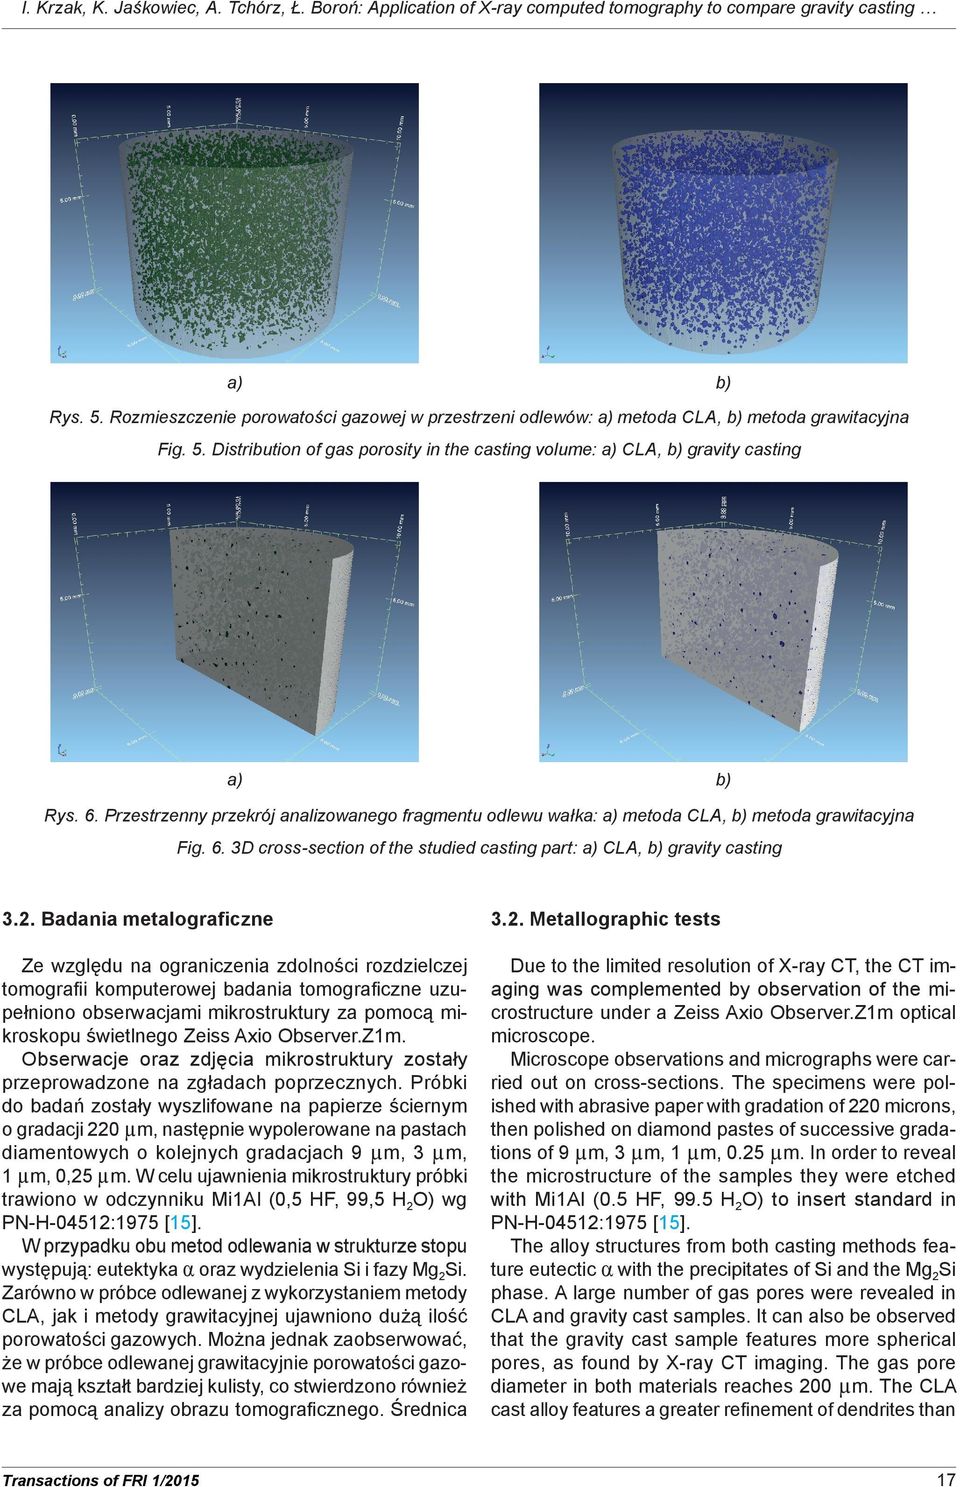 Przestrzenny przekrój analizowanego fragmentu odlewu wałka: metoda CLA, metoda grawitacyjna Fig. 6. 3D cross-section of the studied casting part: CLA, gravity casting 3.2.